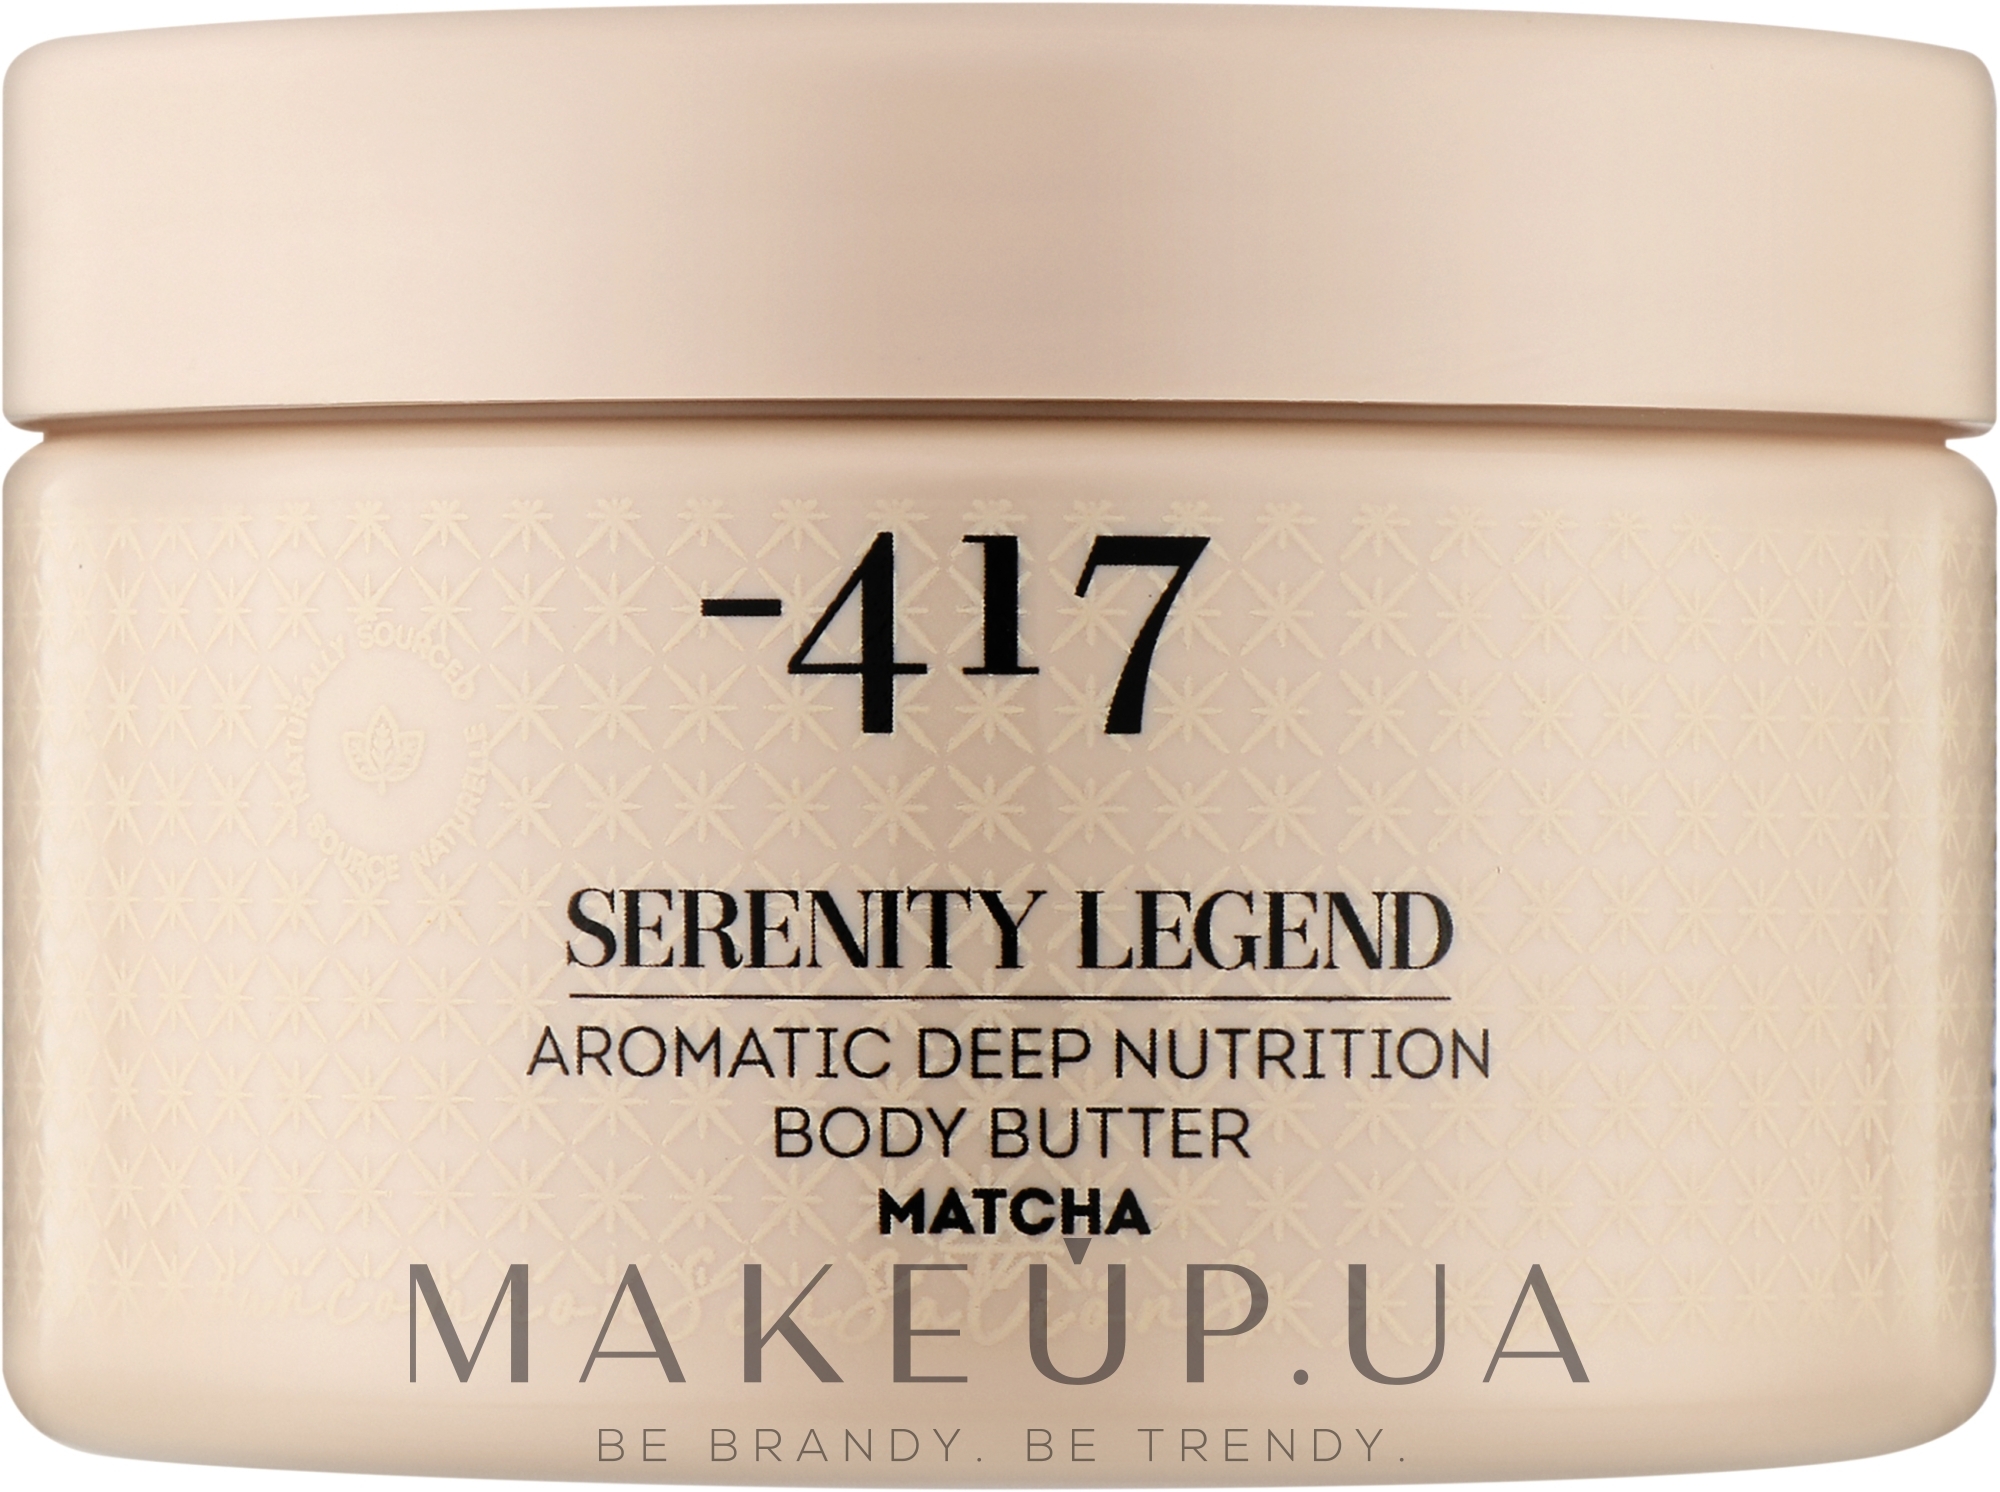 Крем-масло ароматичне для глибокого живлення шкіри тіла "Матча" - - 417 Serenity Legend Aromatic Deep Nutrition Body Butter Matcha — фото 250ml